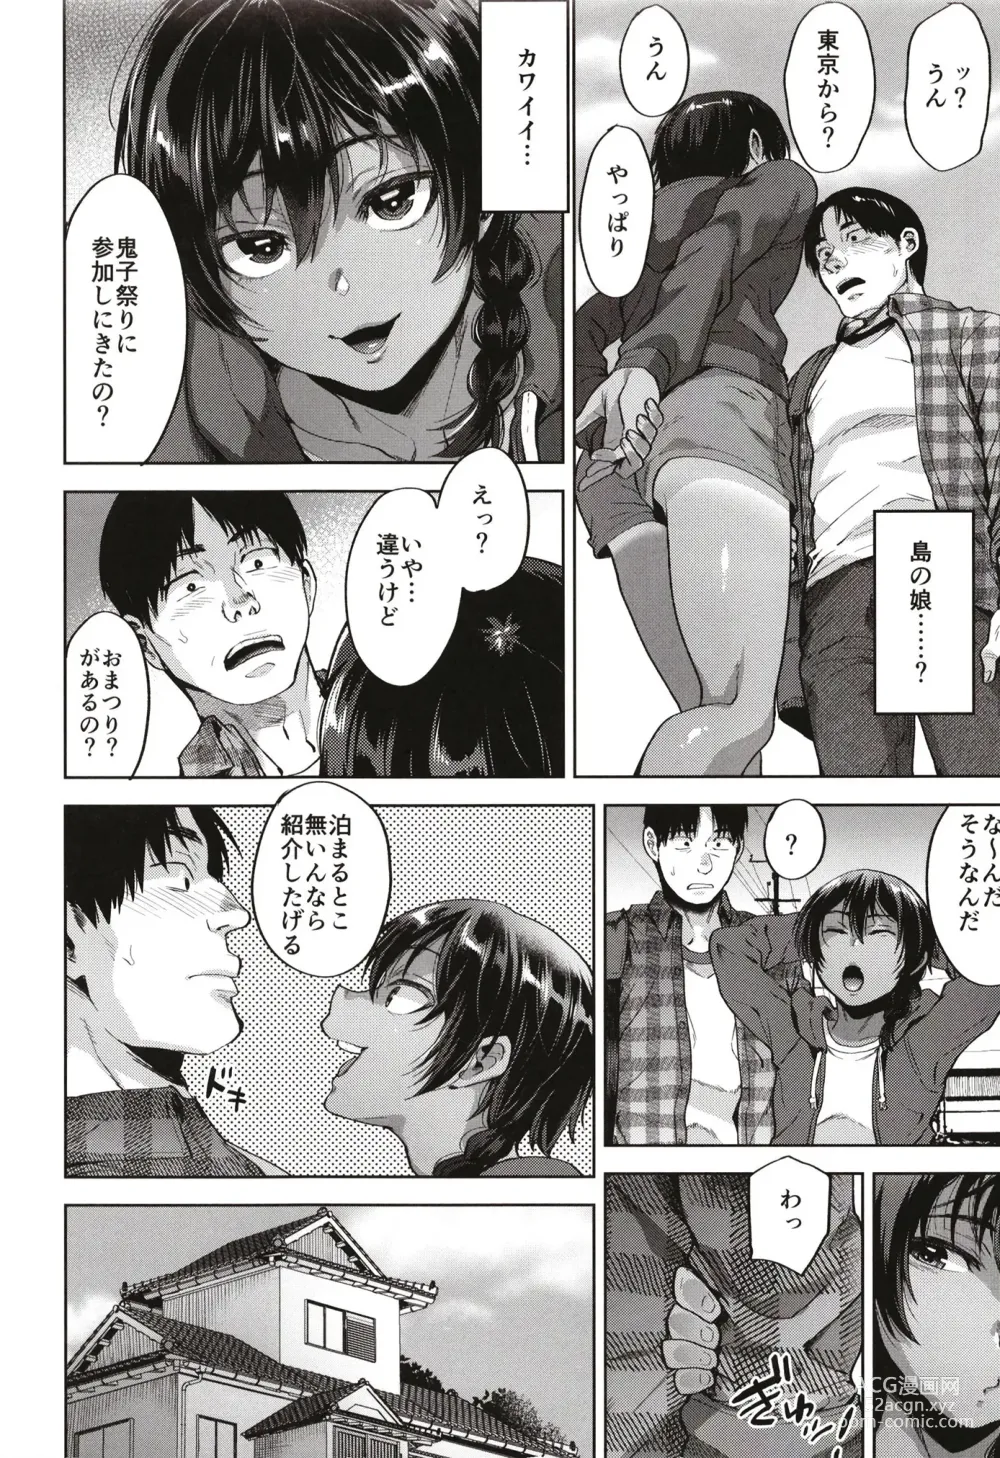 Page 6 of doujinshi Onigo matsurinoyoru